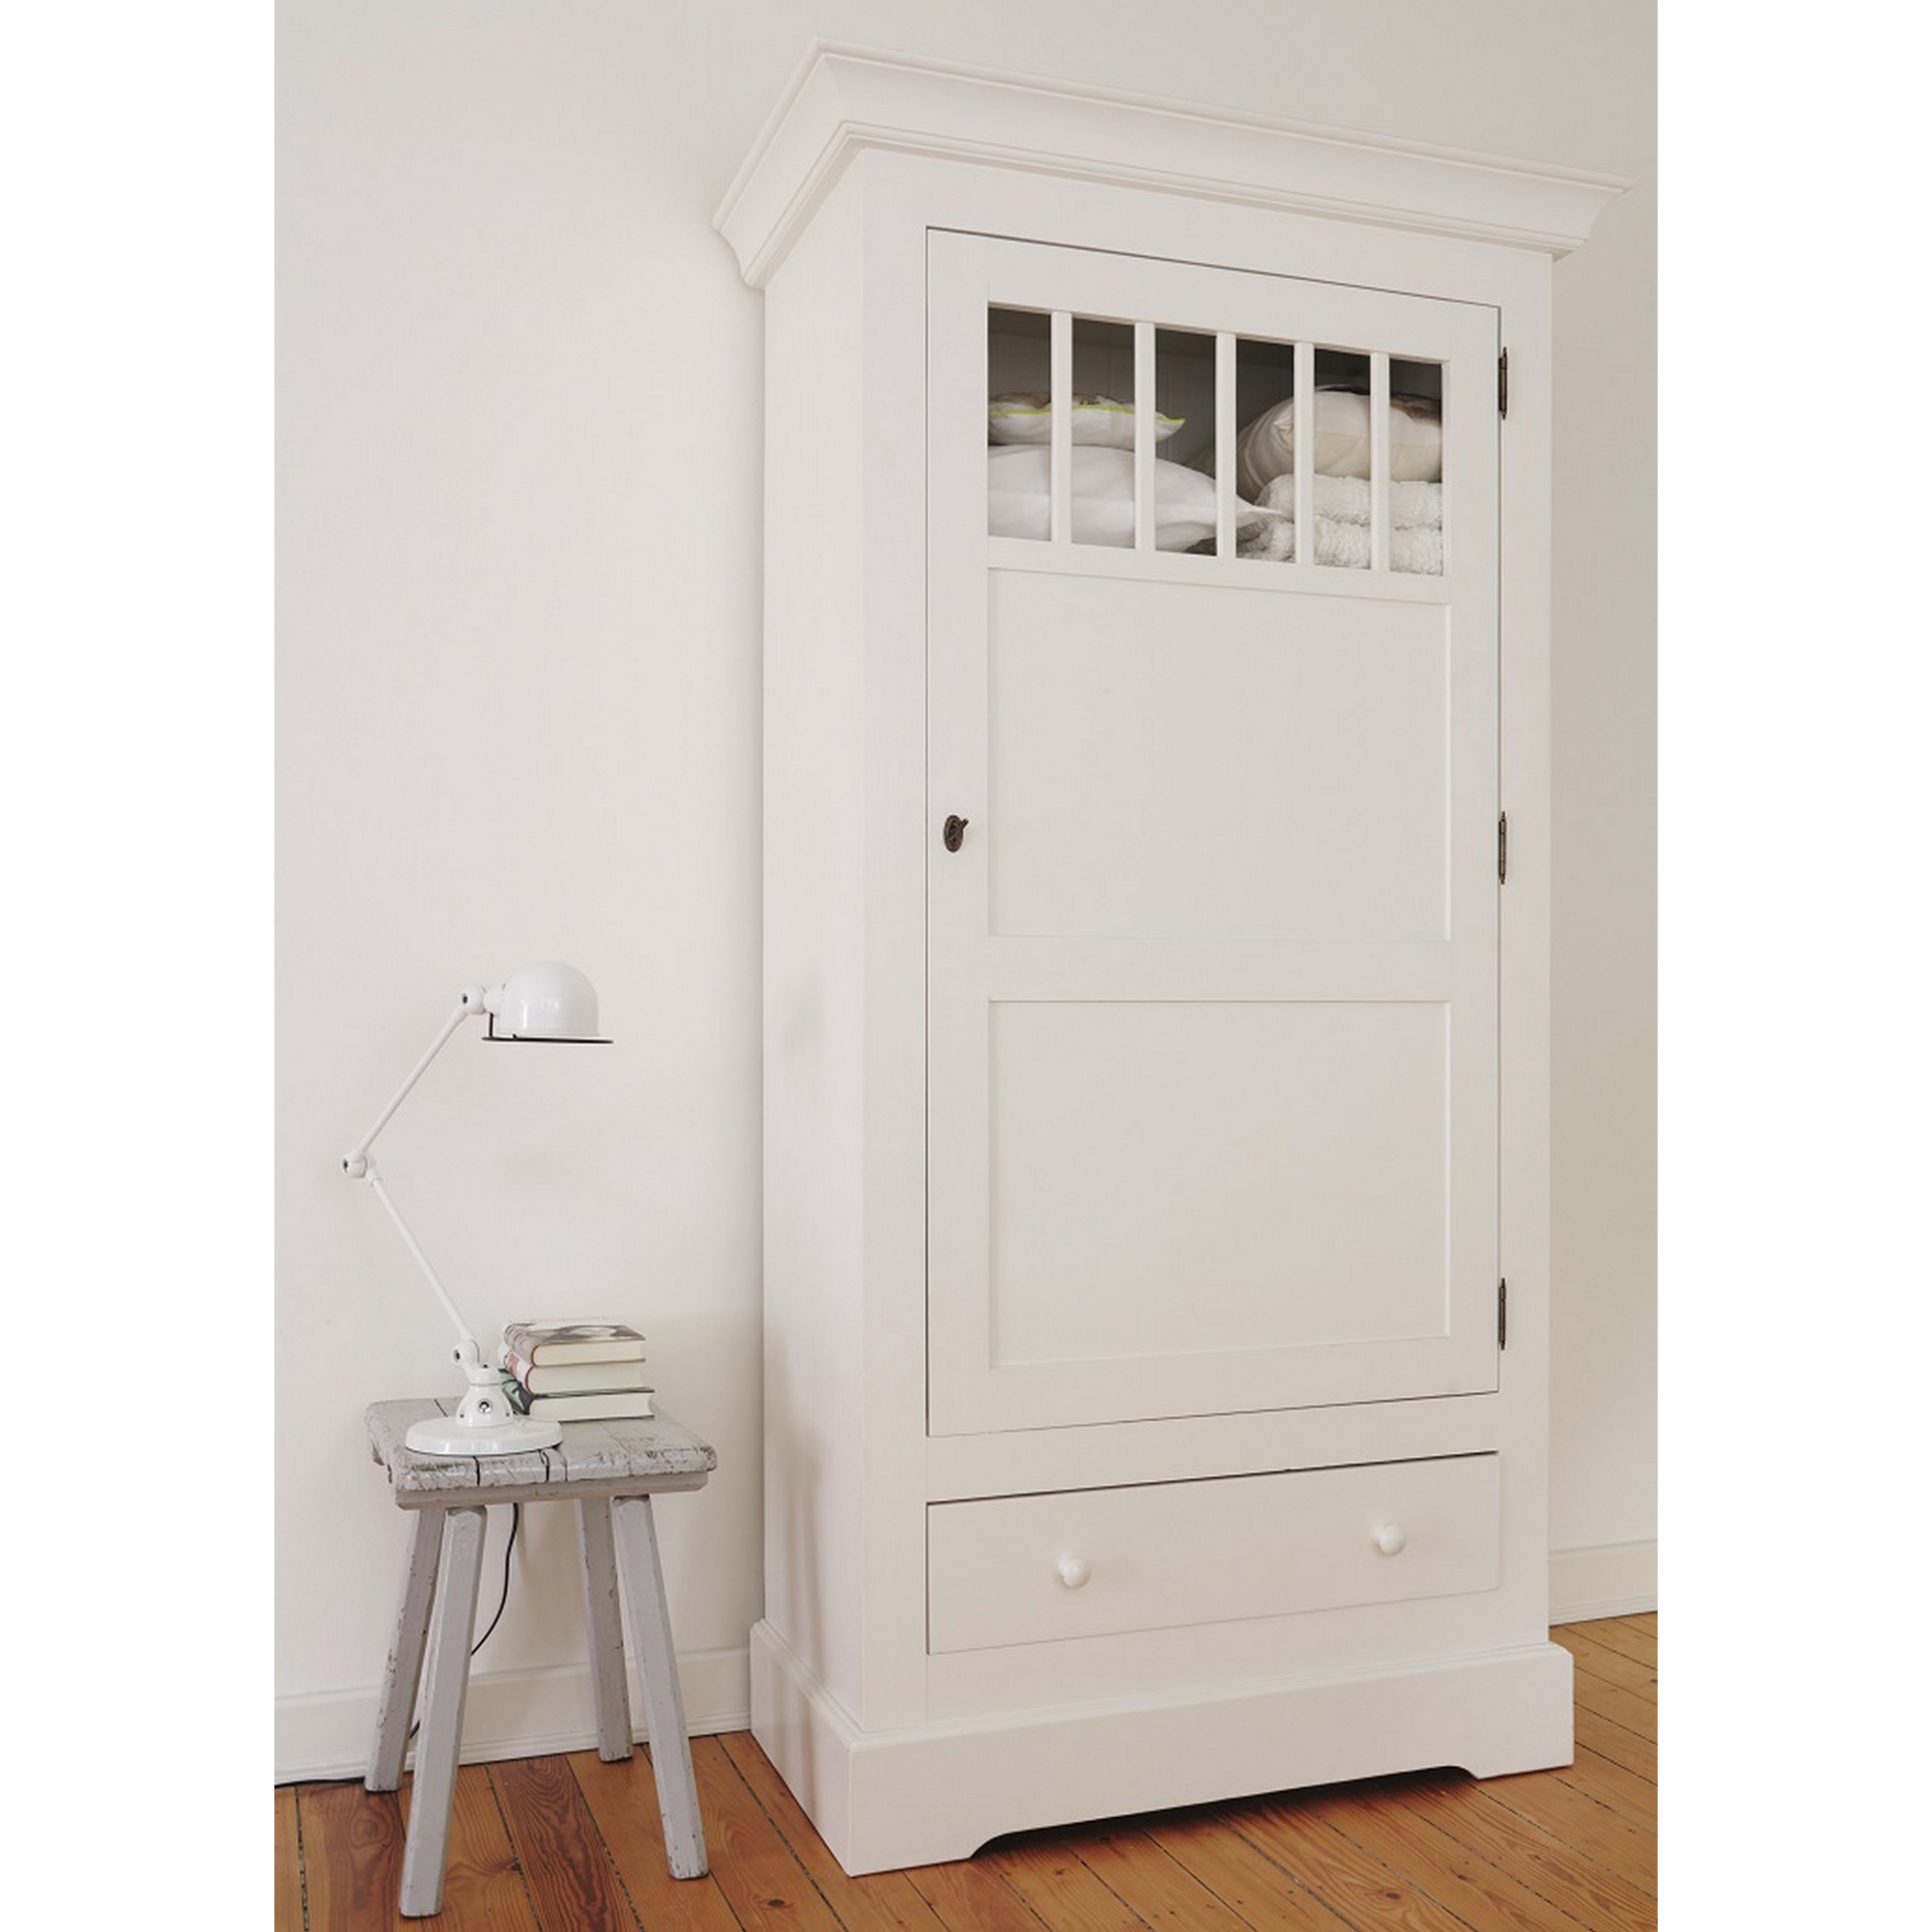 Weißlack für Möbel und Türen matt 2 l + product picture